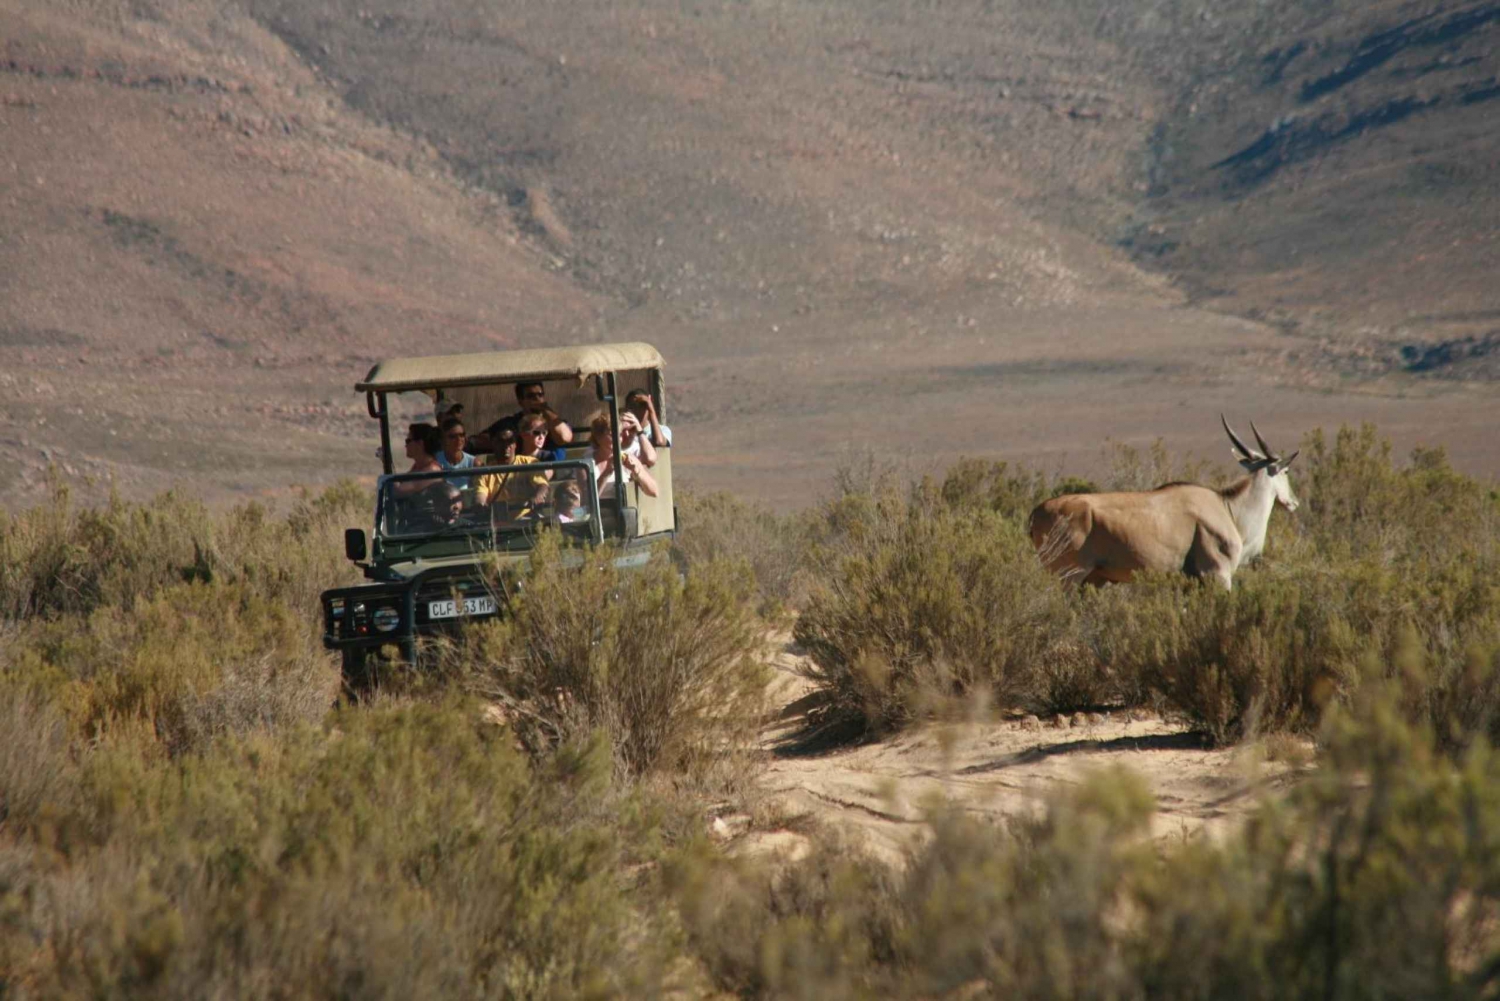 Au départ du Cap : Aller-retour à Aquila avec safari